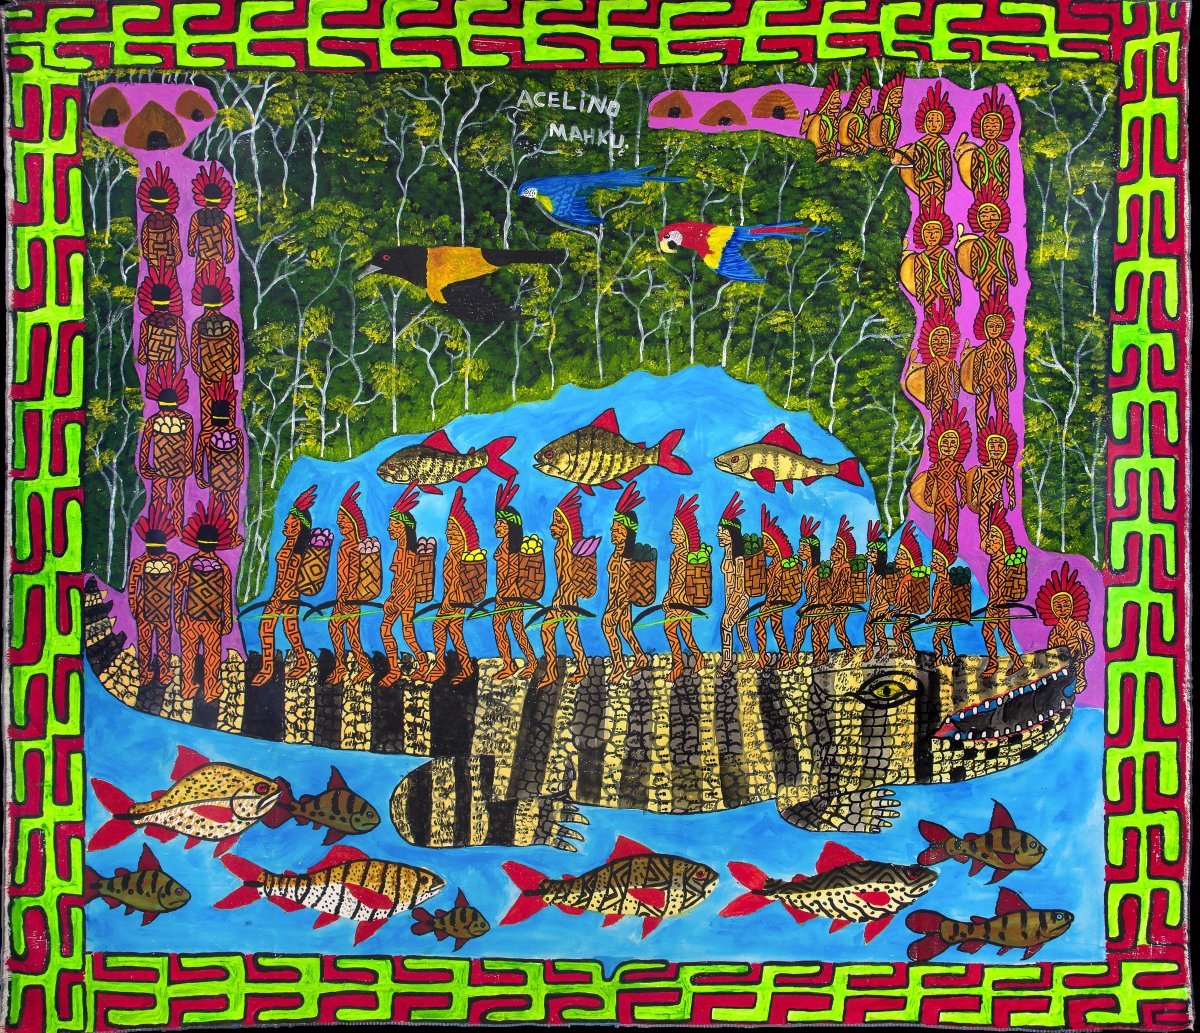 후니쿠인 예술가 운동의 작품 ‘카페나웨 푸케니부(Kapenawe Pukenibu)’. 태초에 인간이 바다를 건너도록 거대한 악어가 다리를 놓아 주었다는 전설을 담고 있다. 상파울루미술관 제공